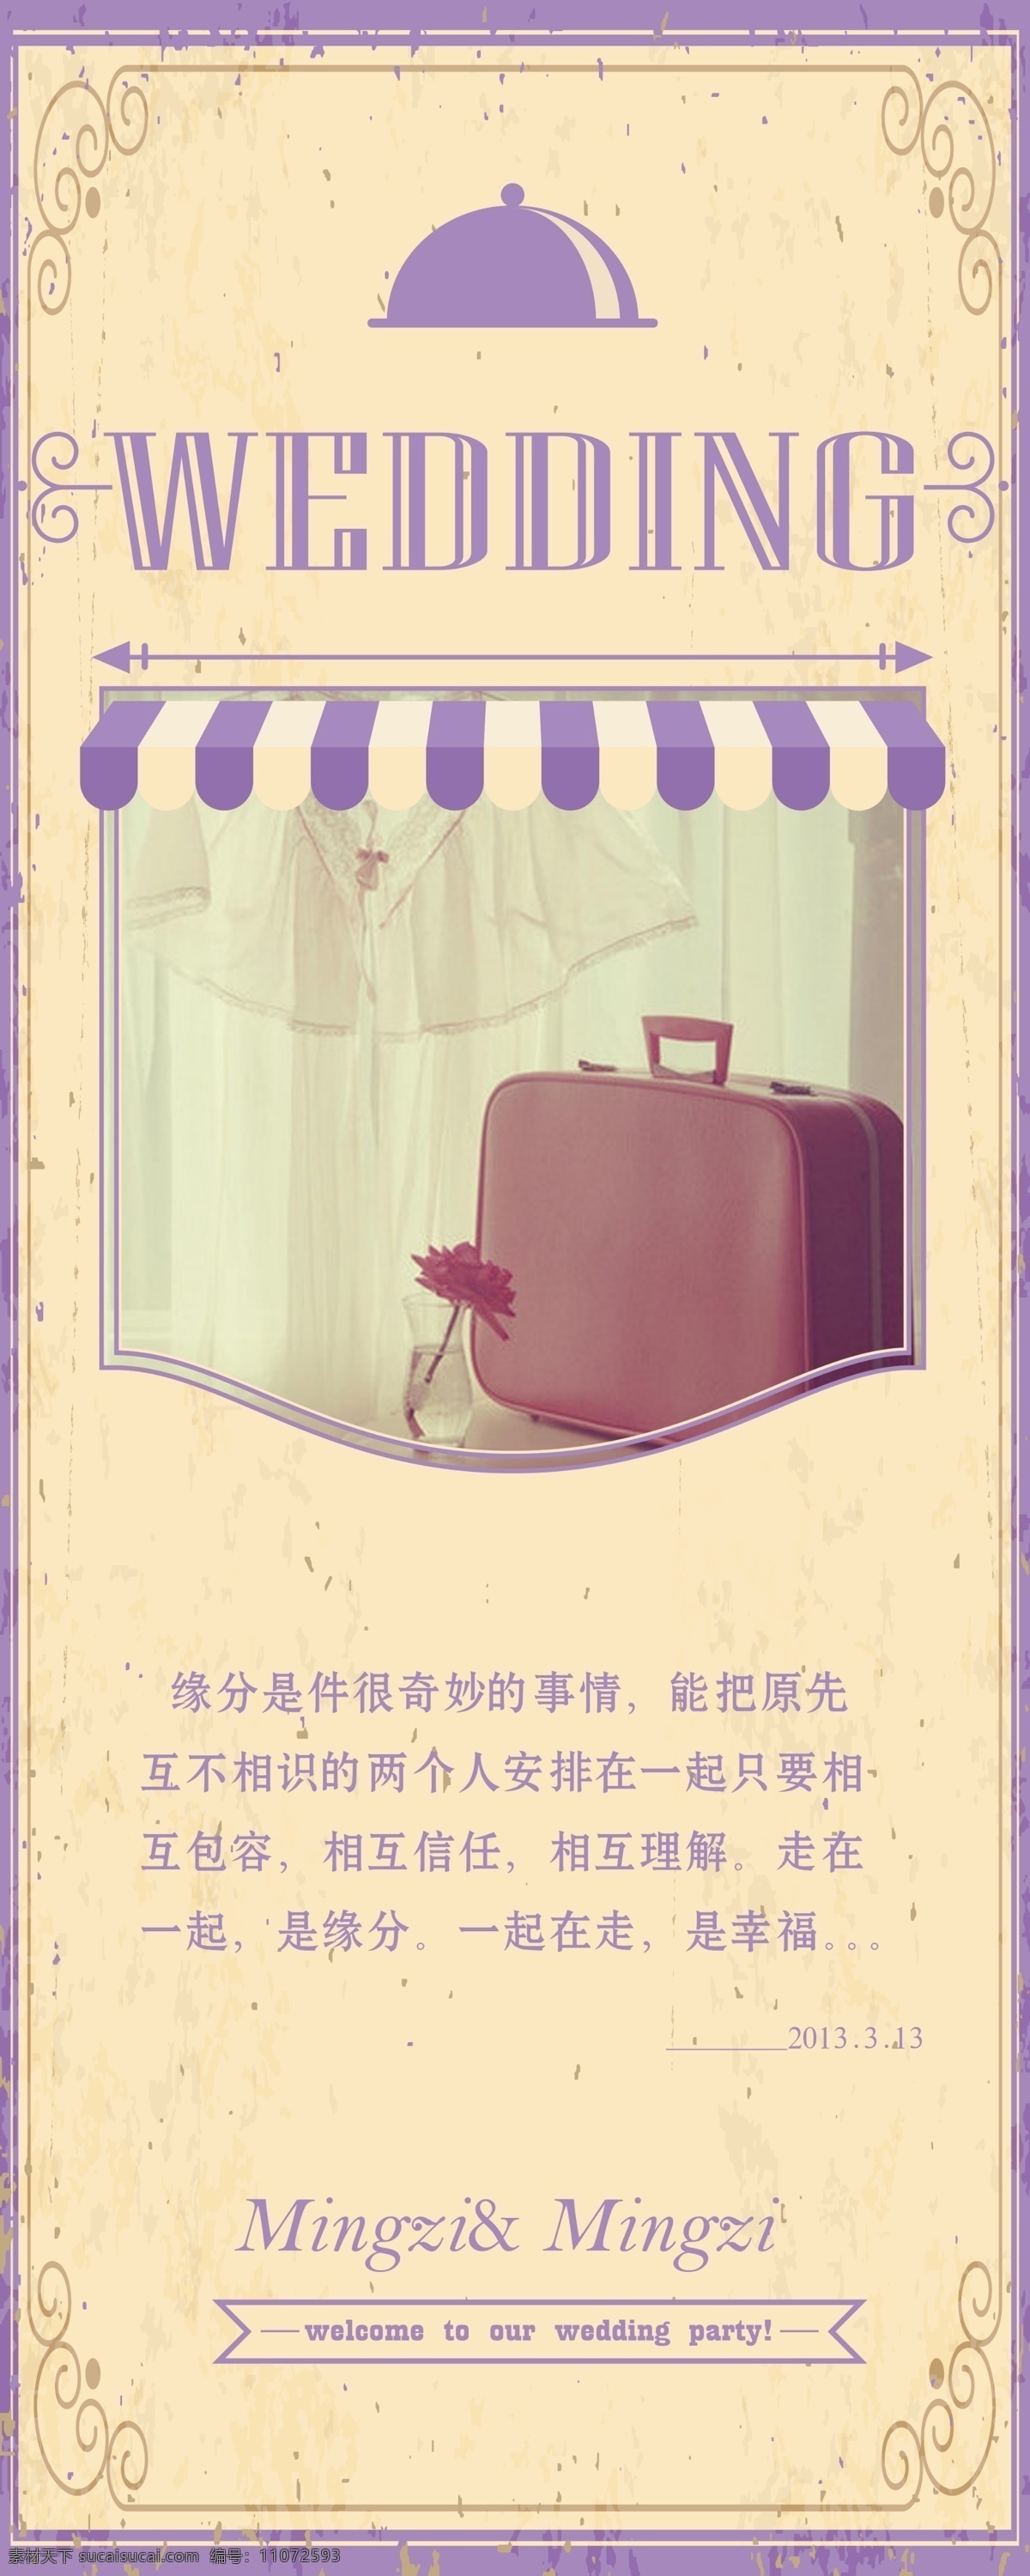 广告设计模板 婚礼海报 源文件 照片海报 紫色 婚礼 海报 模板下载 婚礼策划海报 完整